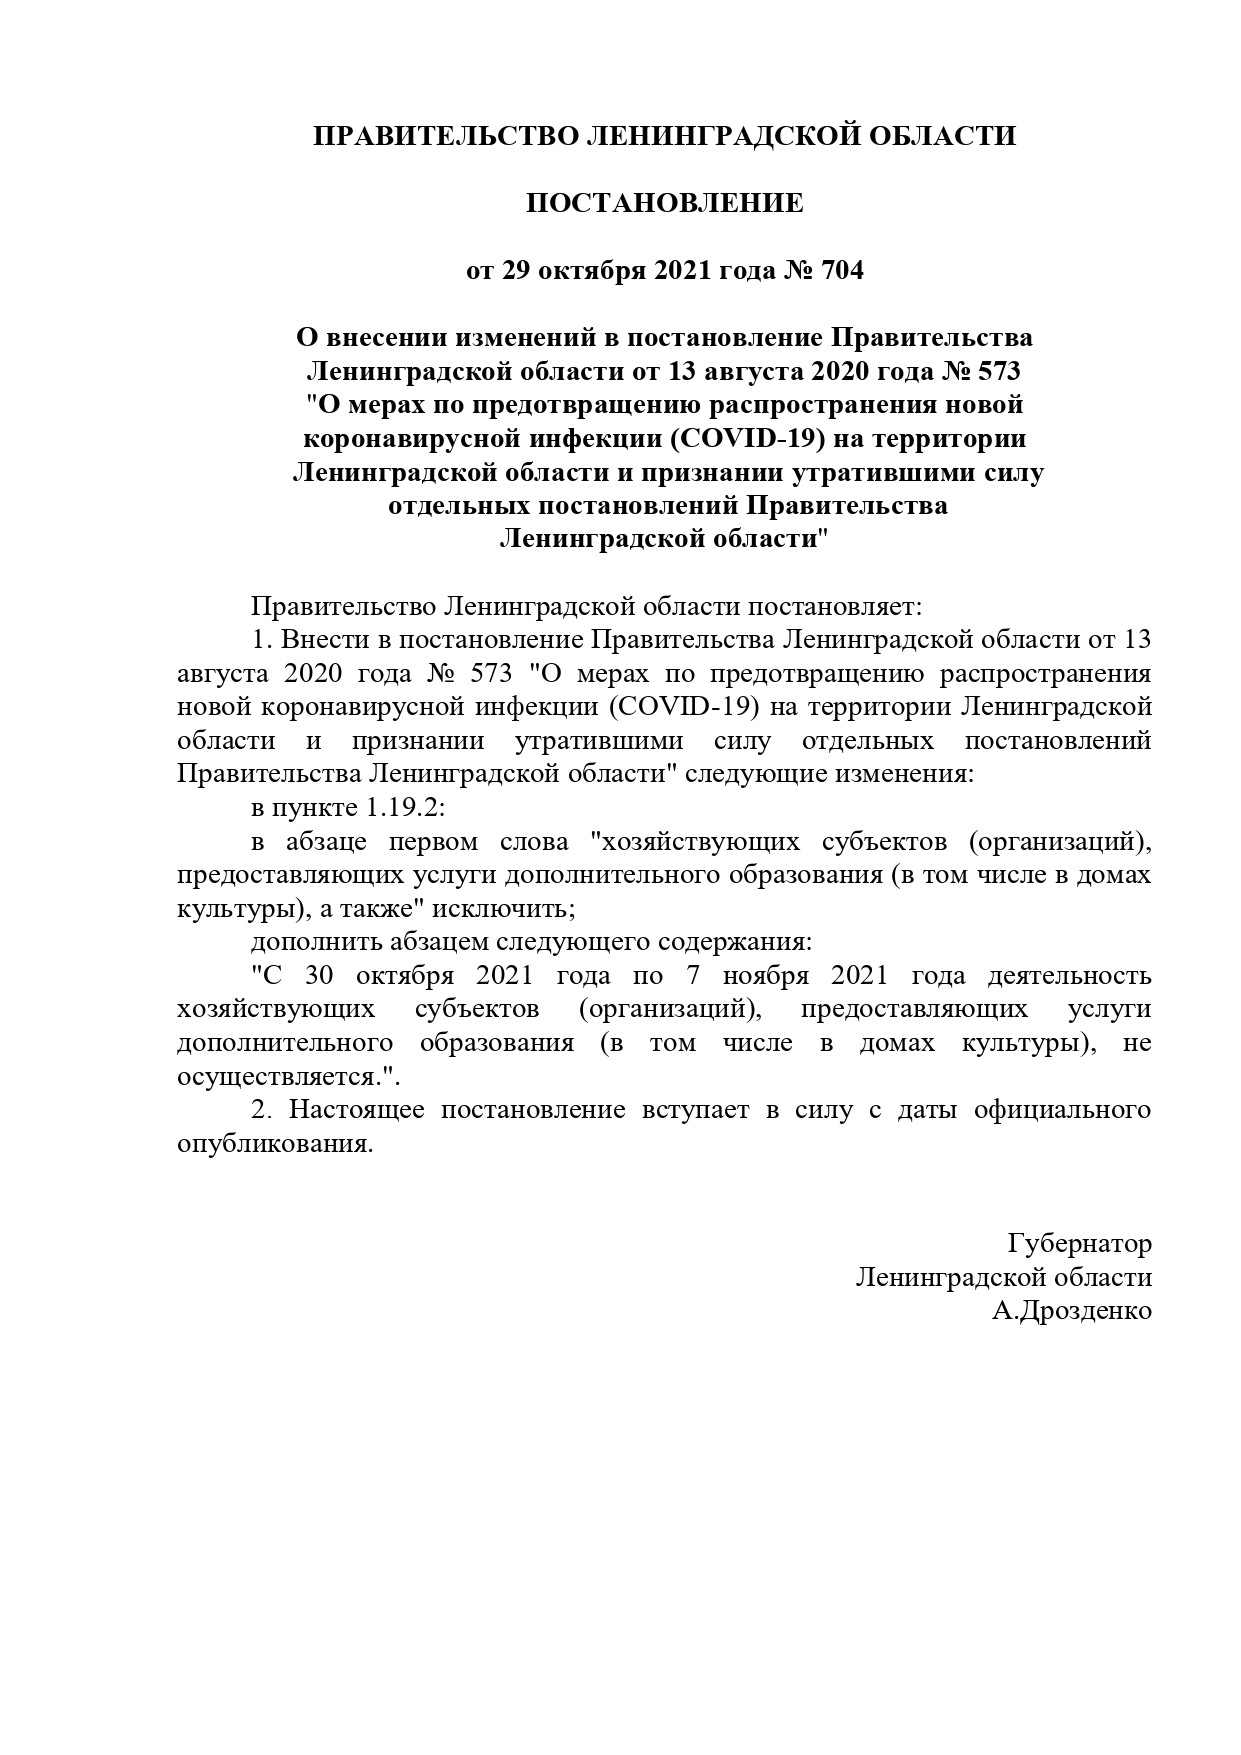 постановление Правительства Ленинградской области от 29 октября 2021 года № 704